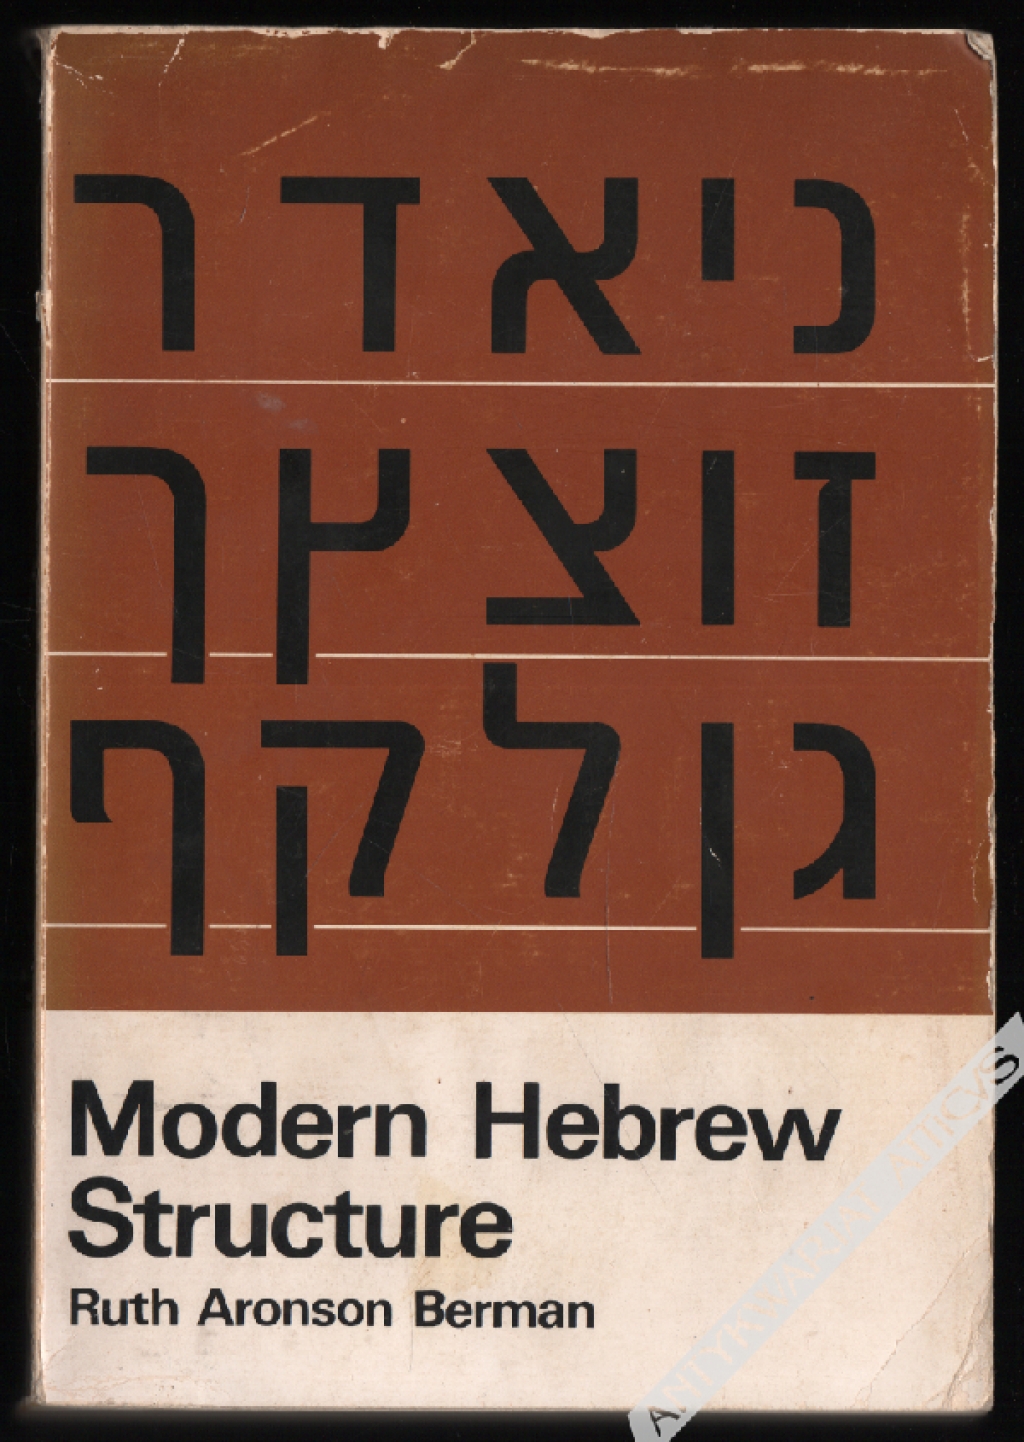 Modern Hebrew Structure